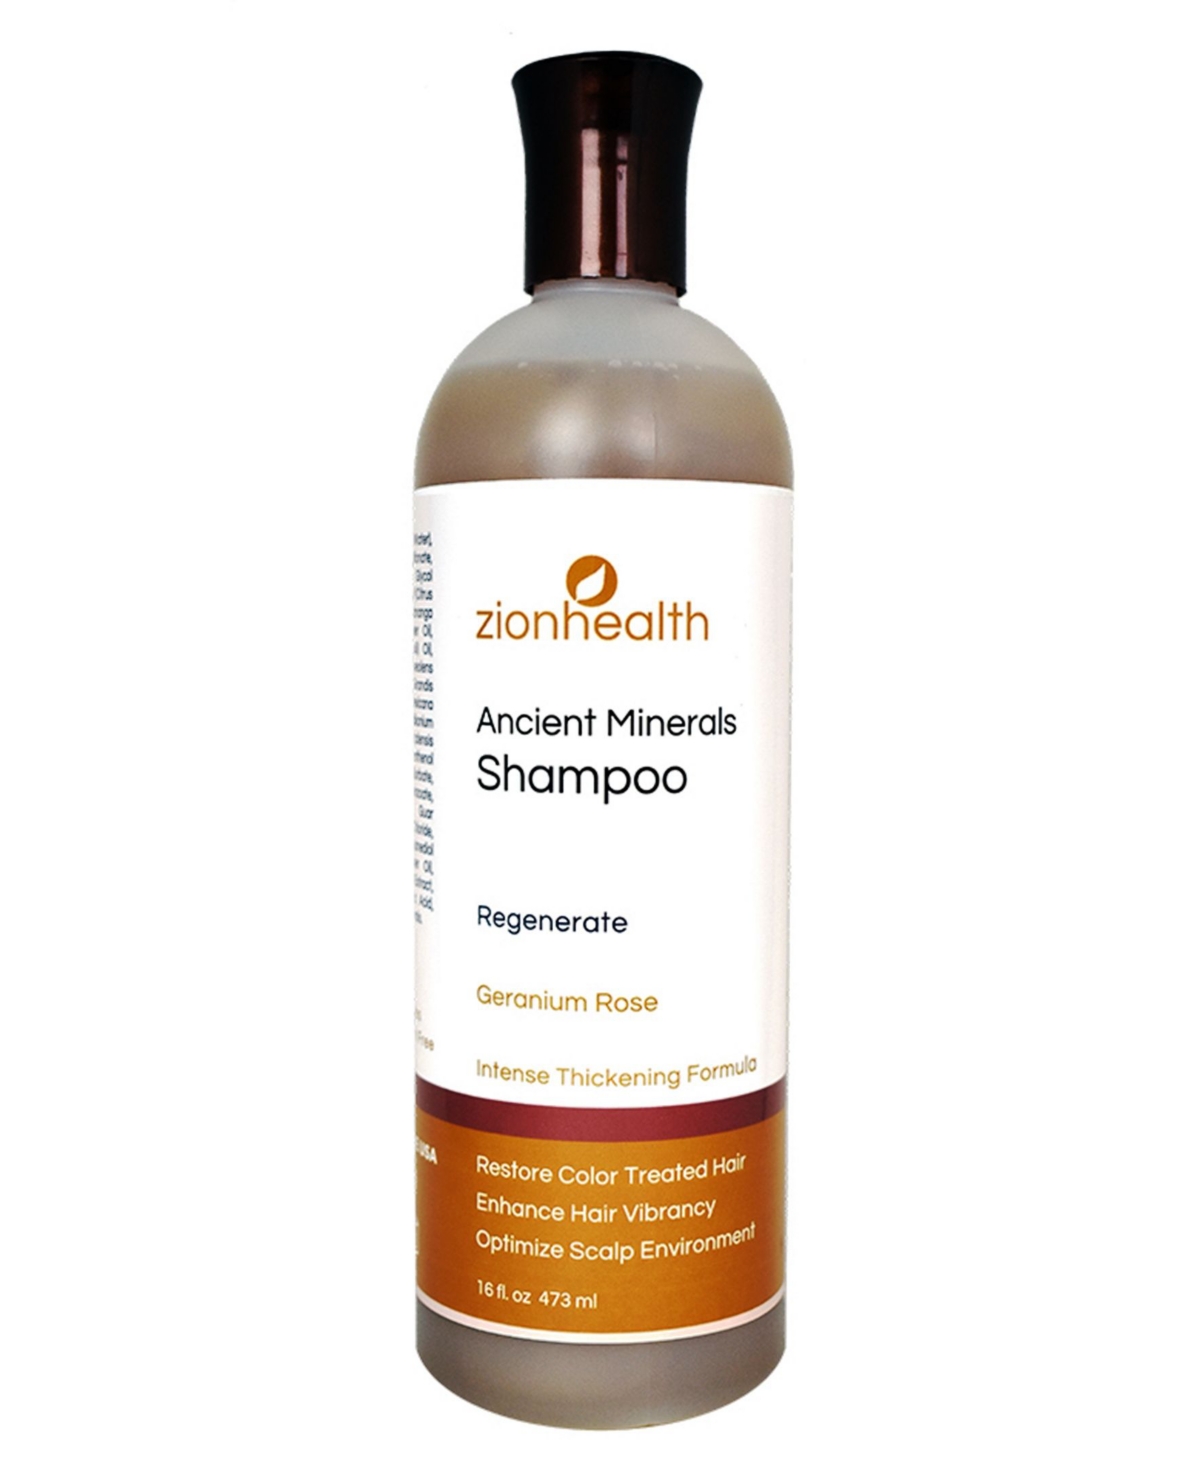 Regenerate Hair Shampoo, 16 oz - No COLOR